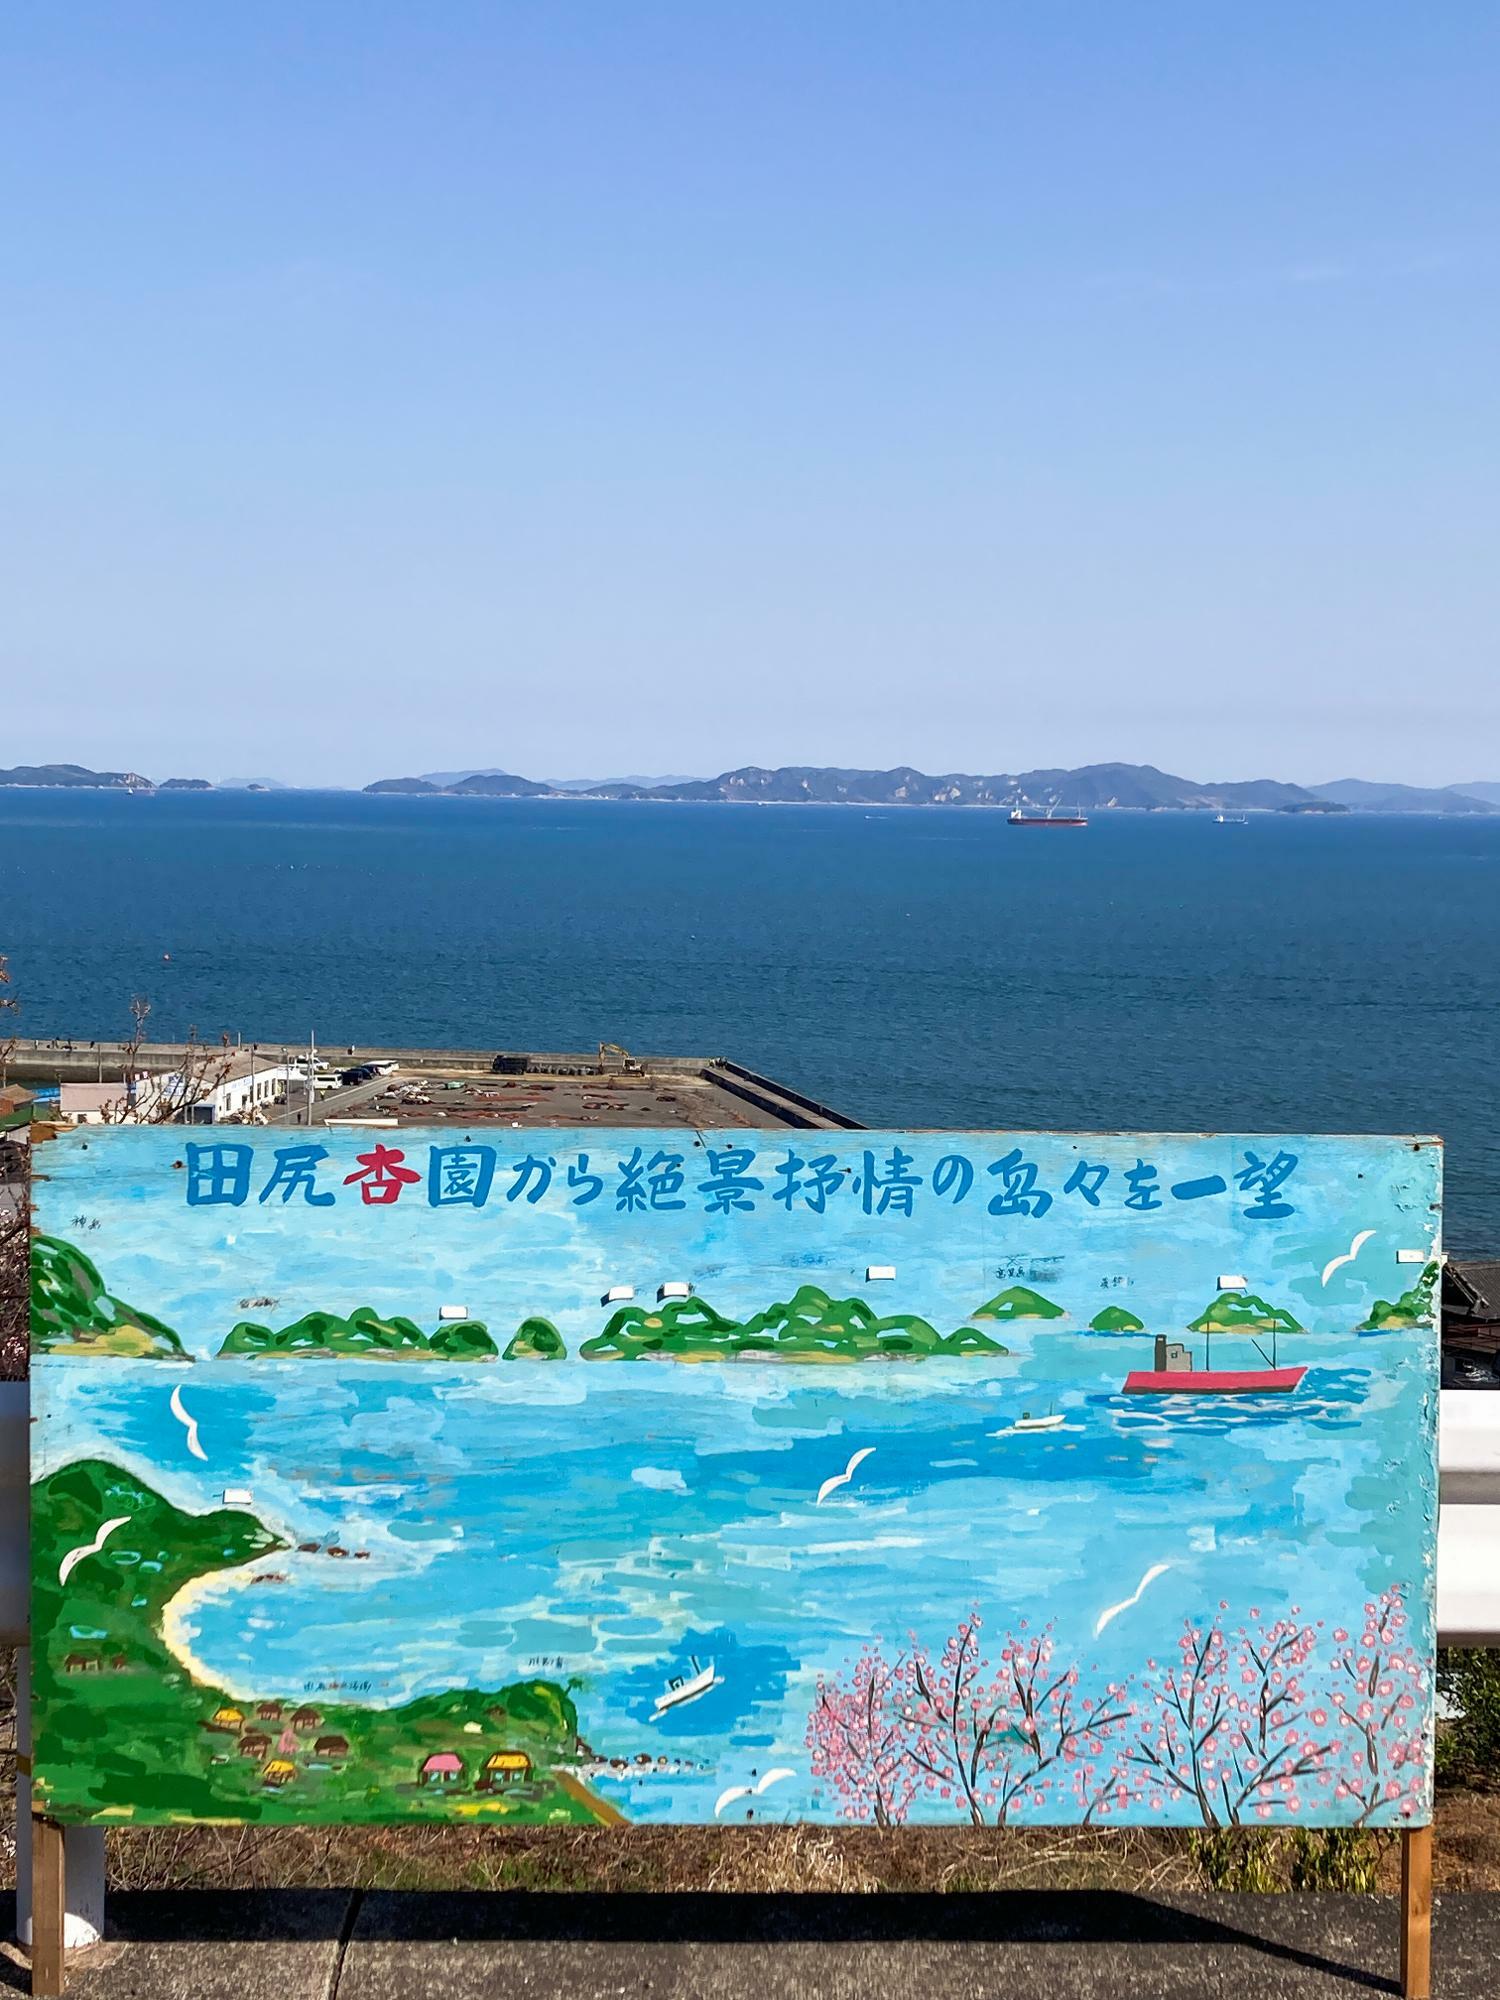 画像左端 神島、真ん中辺り 白石島